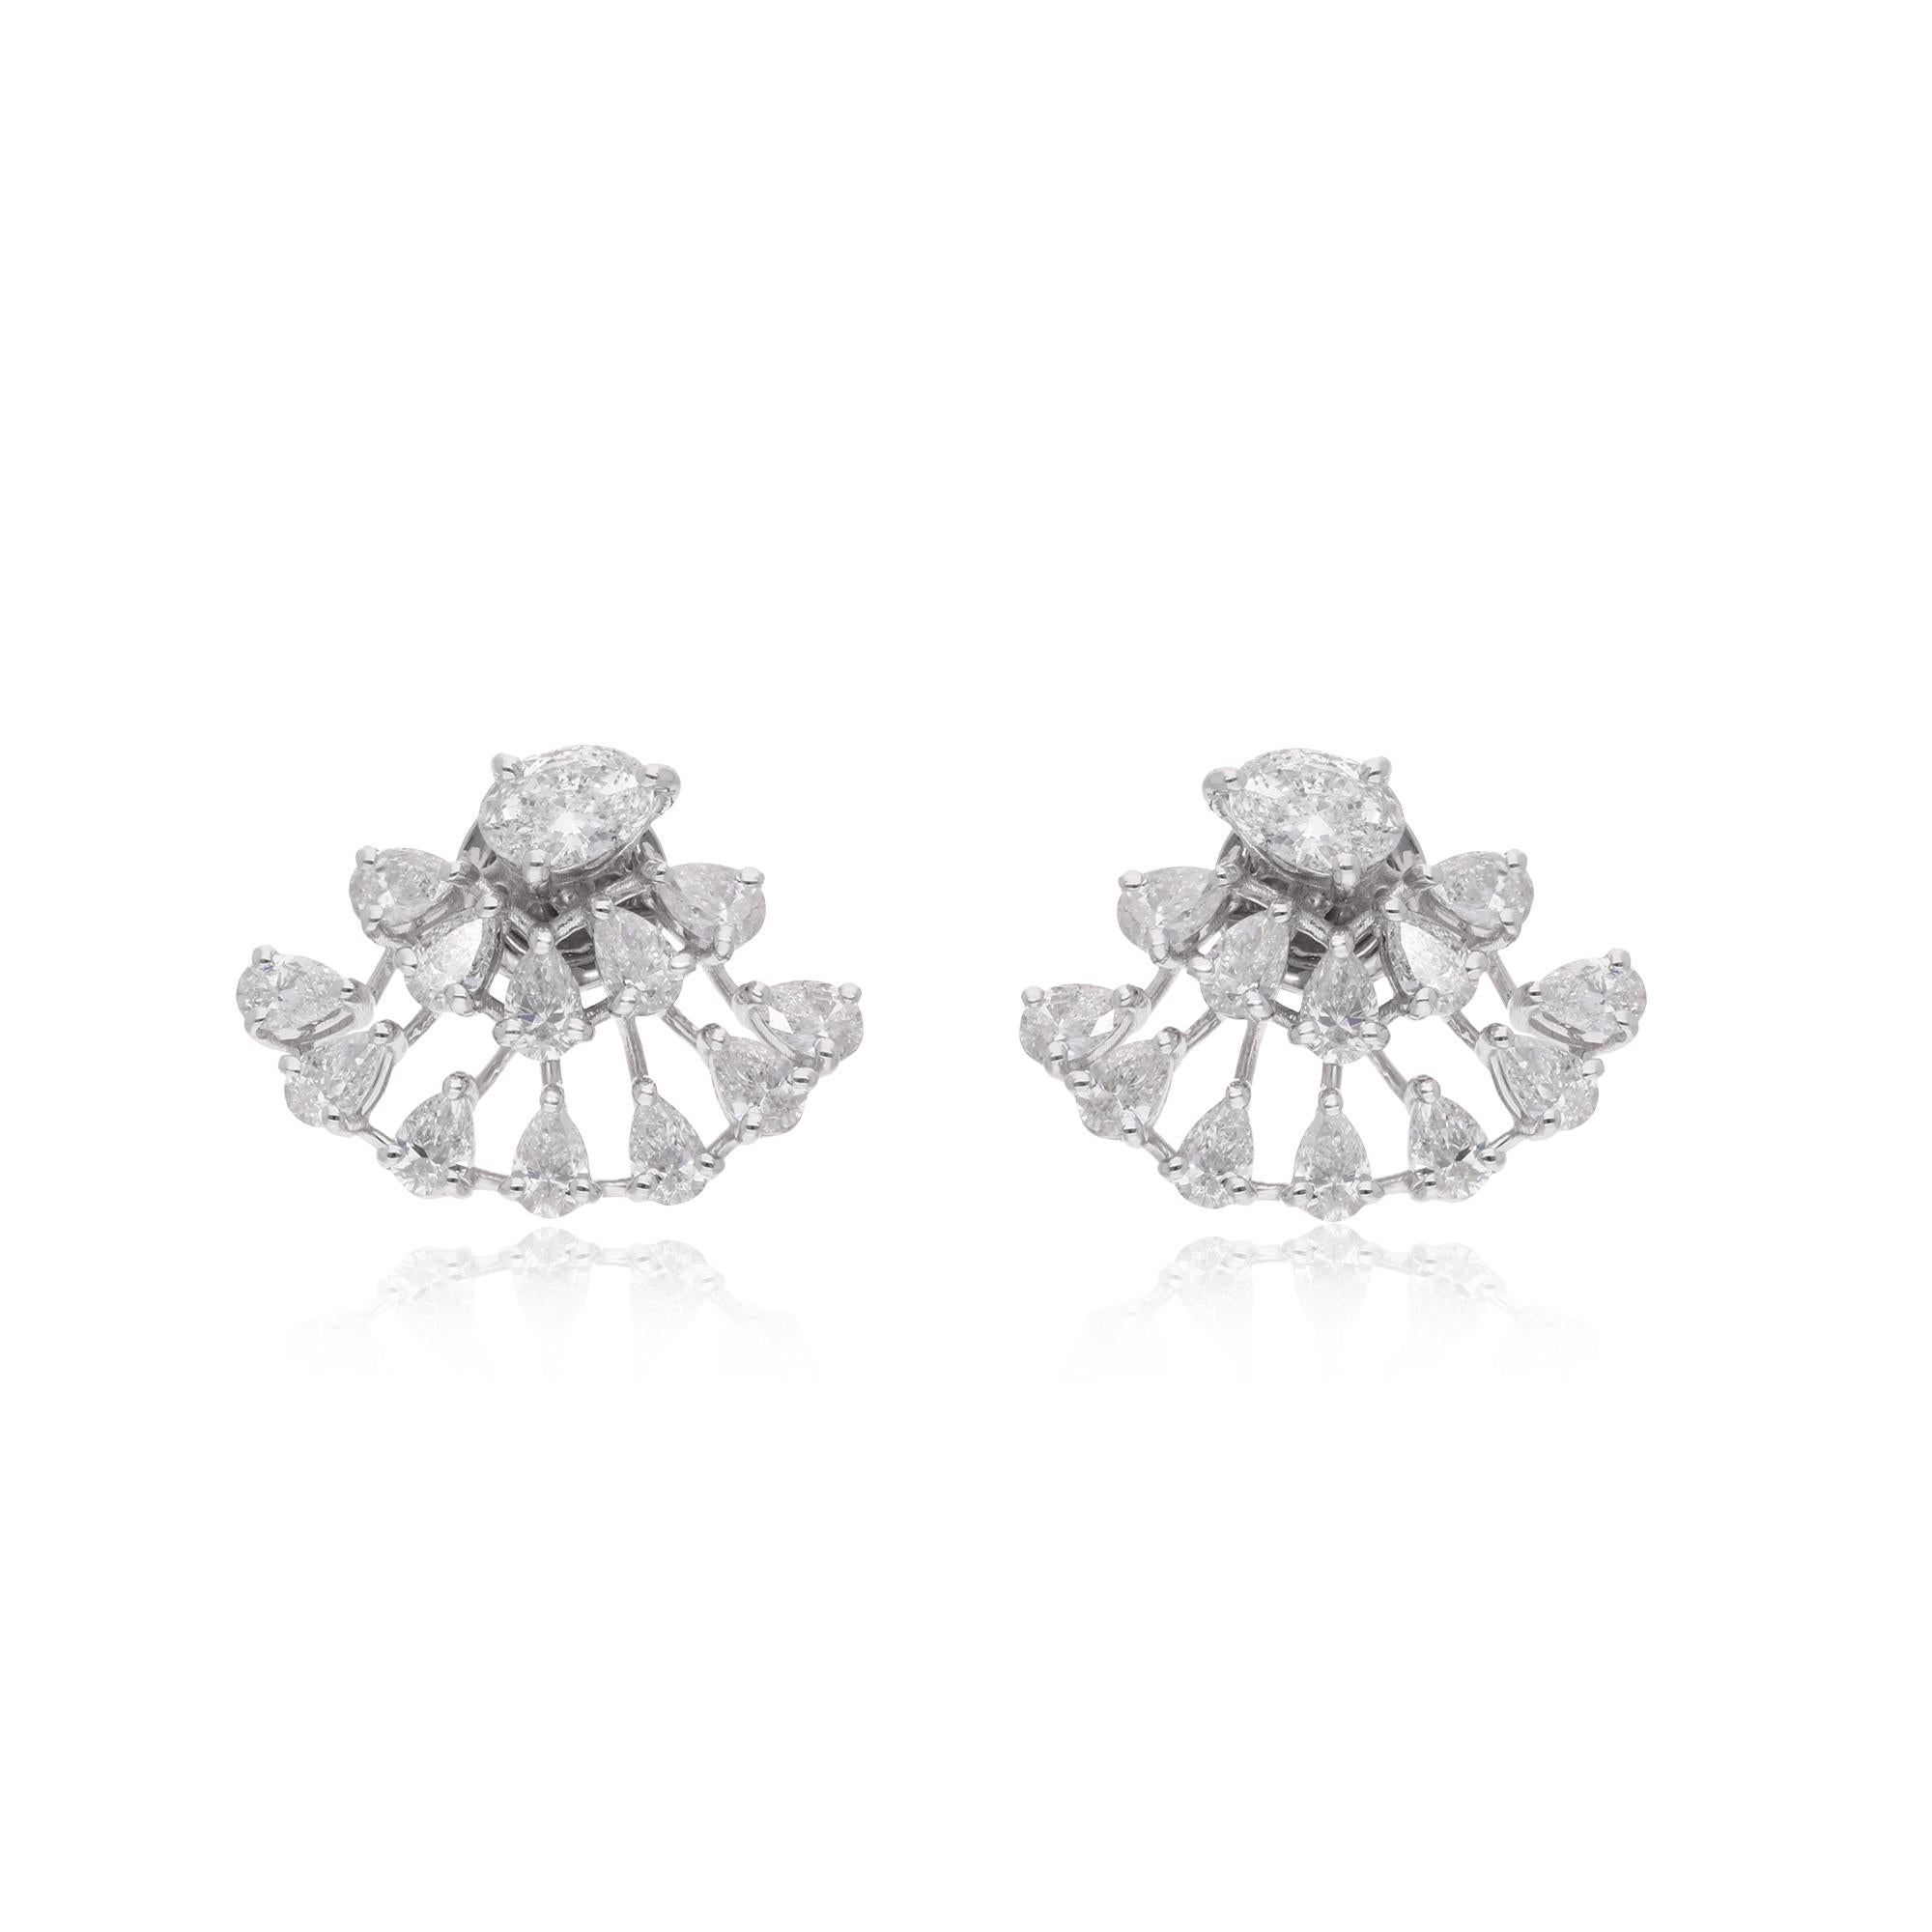 Erhöhen Sie Ihren Stil mit diesen exquisiten Diamant-Ohrsteckern mit einem atemberaubenden Spinnennetz-Design. Diese Ohrringe sind in 10k/14k/18k, Rose Gold/Gelb Gold/Weiß Gold erhältlich.

Sie sind das perfekte Geschenk für Mutter, Verlobte,